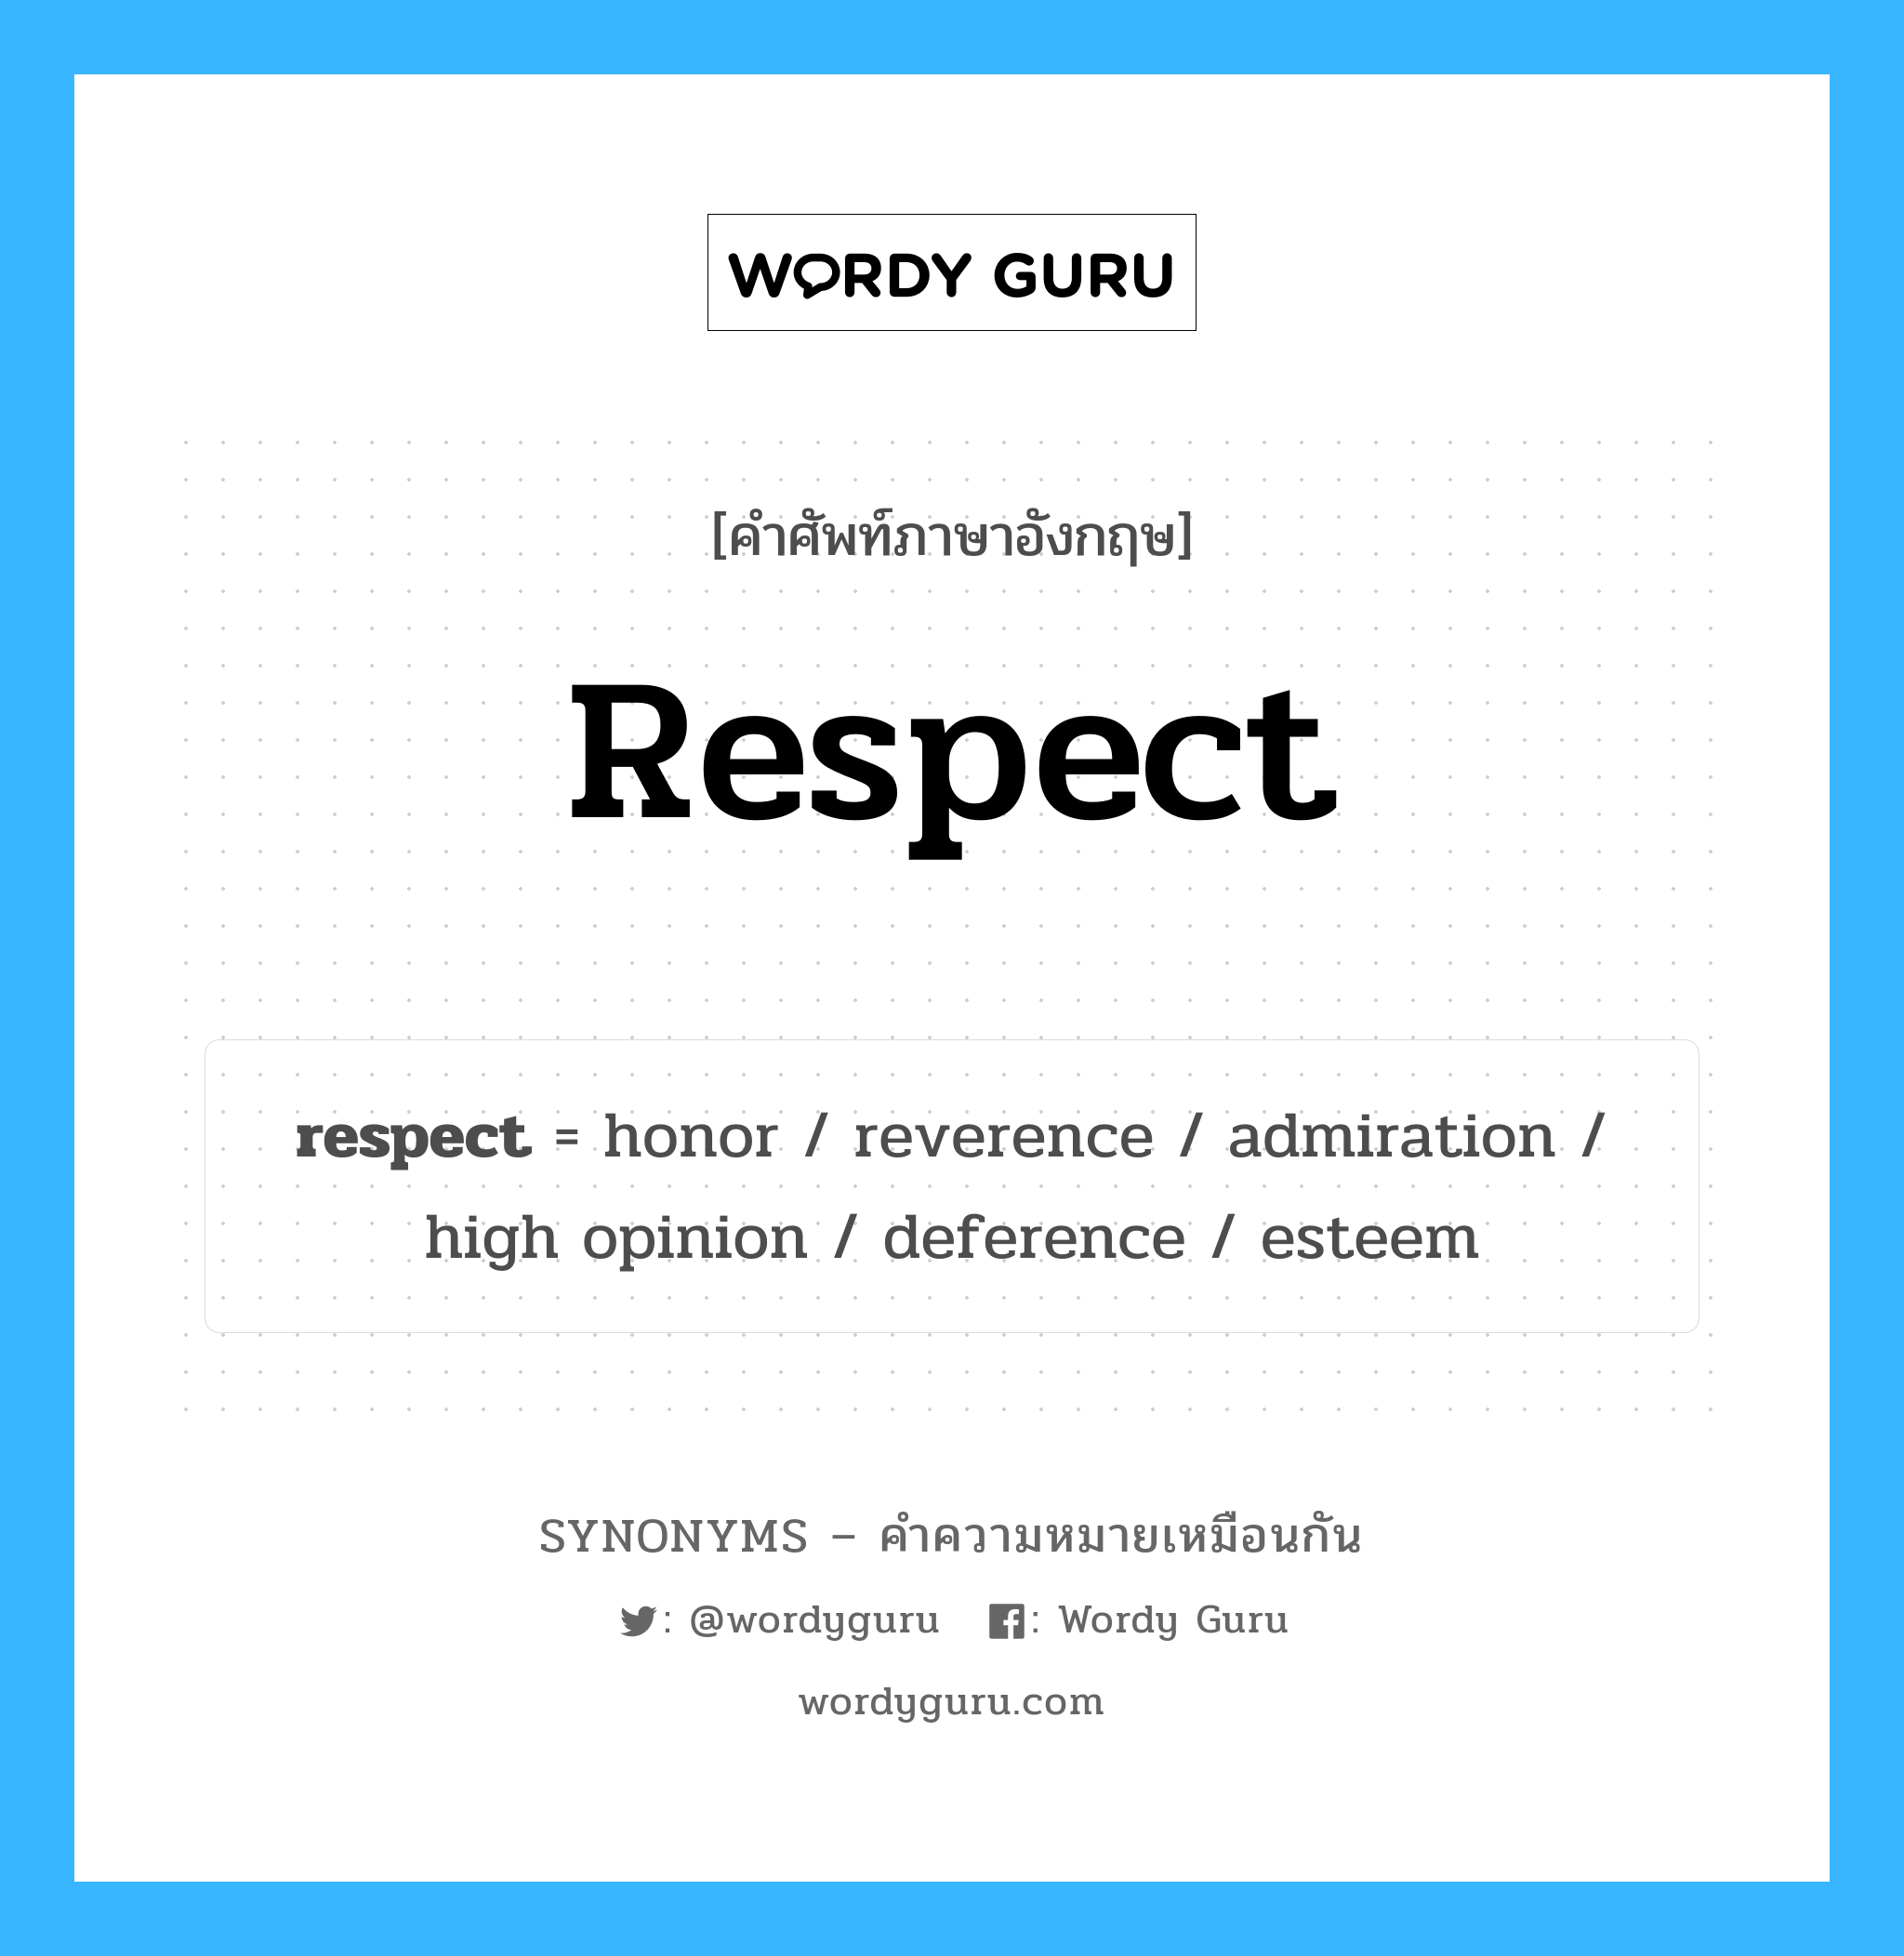 esteem เป็นหนึ่งใน respect และมีคำอื่น ๆ อีกดังนี้, คำศัพท์ภาษาอังกฤษ esteem ความหมายคล้ายกันกับ respect แปลว่า เห็นคุณค่า หมวด respect